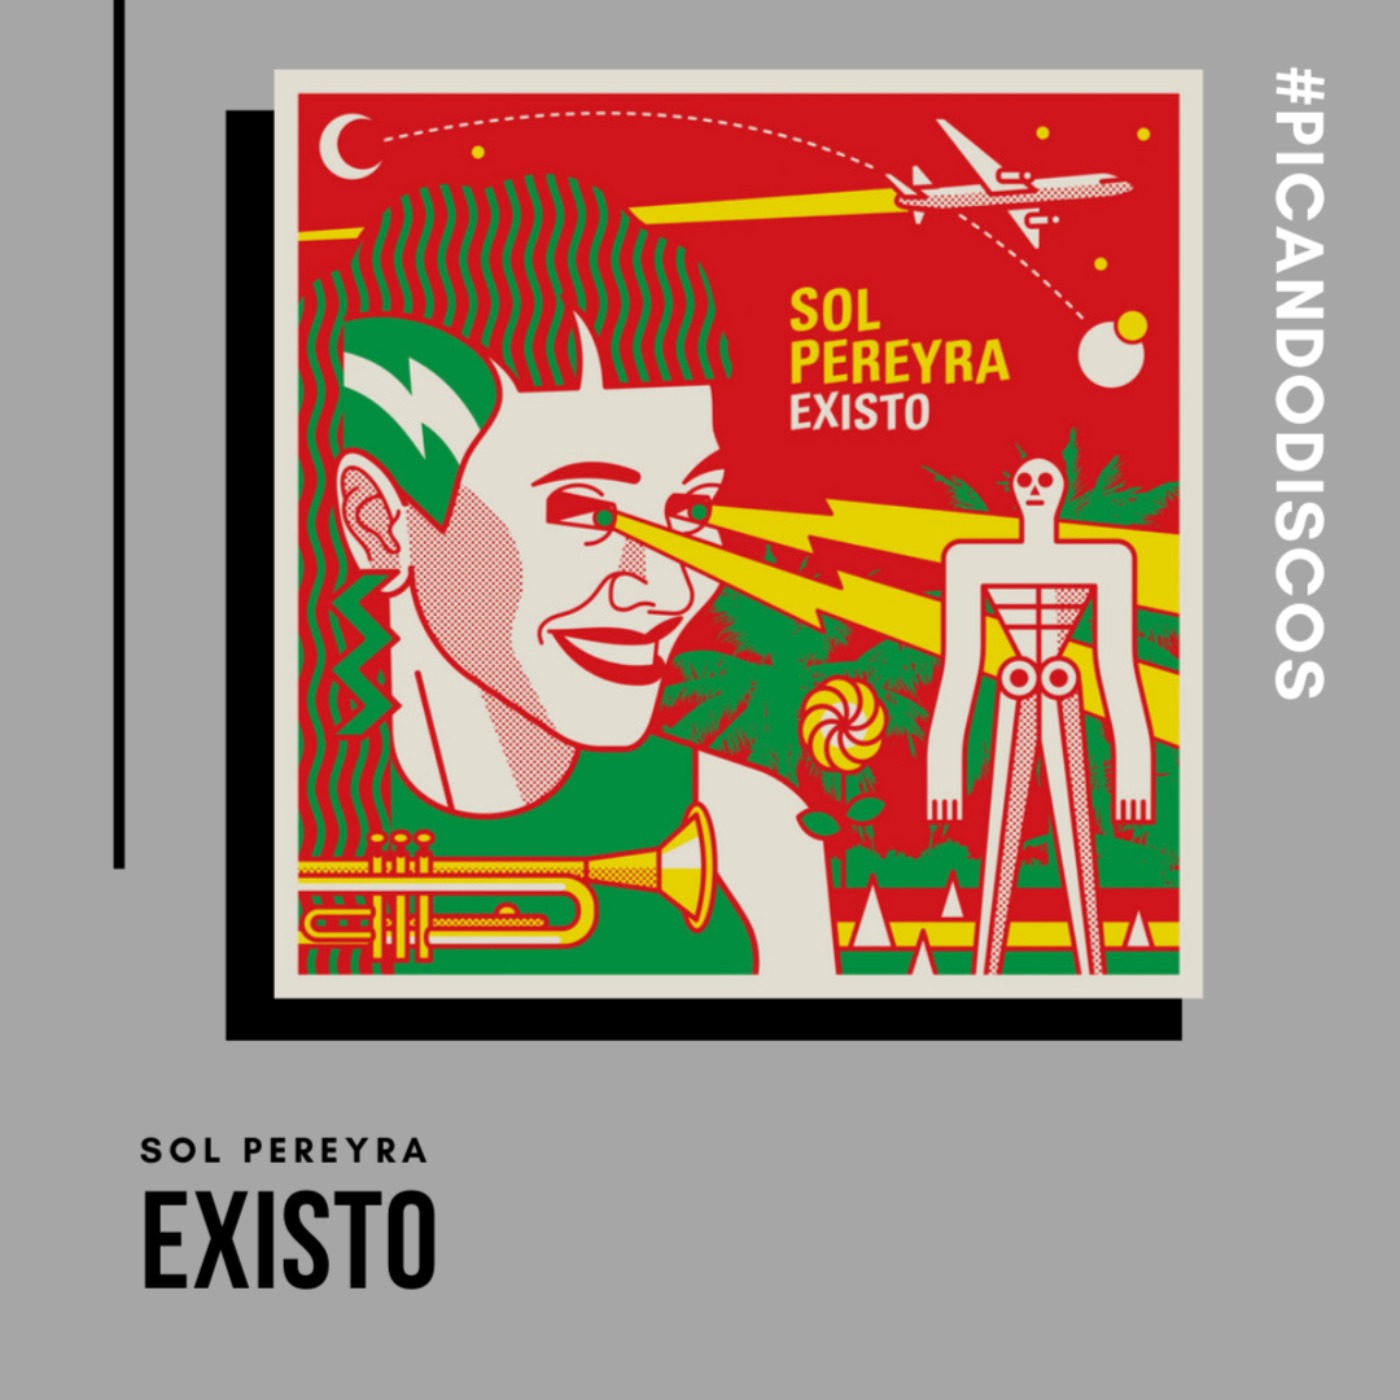 cover art for "Existo", Sol Pereyra